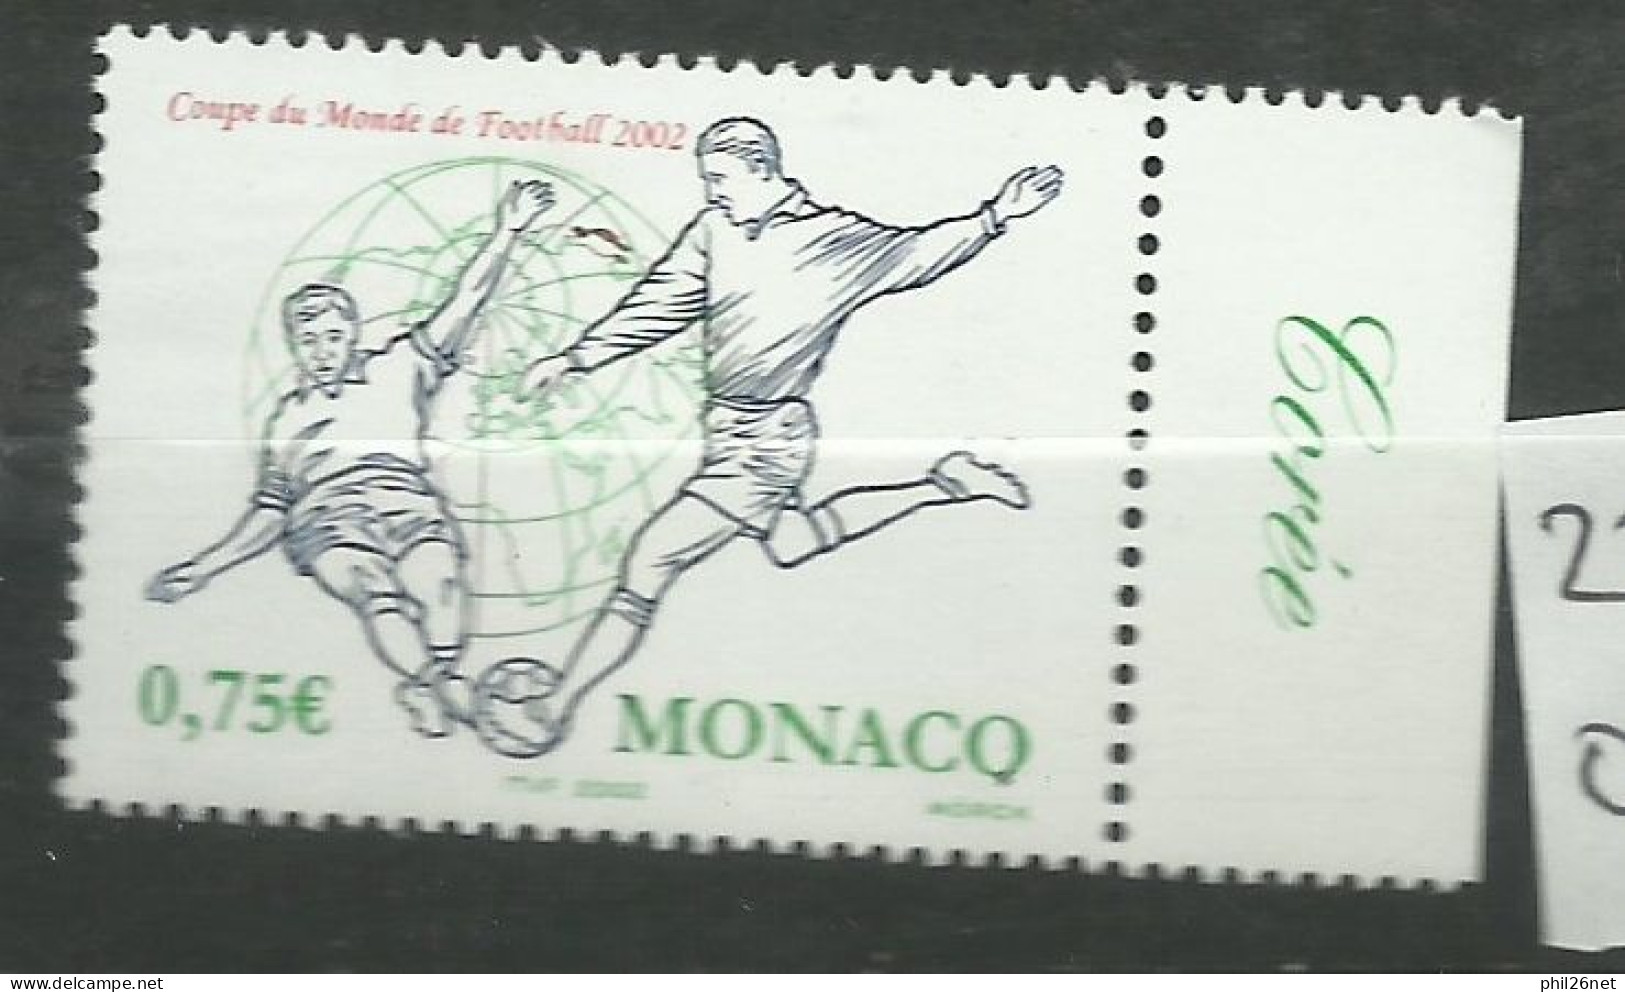 Monaco  N° 2350  Coupe Du Monde Football  2002 Corée Du Sud Et Japon   Neuf  *  *     B/TB   Voir Scans  Soldé ! ! ! - 2002 – Corea Del Sud / Giappone